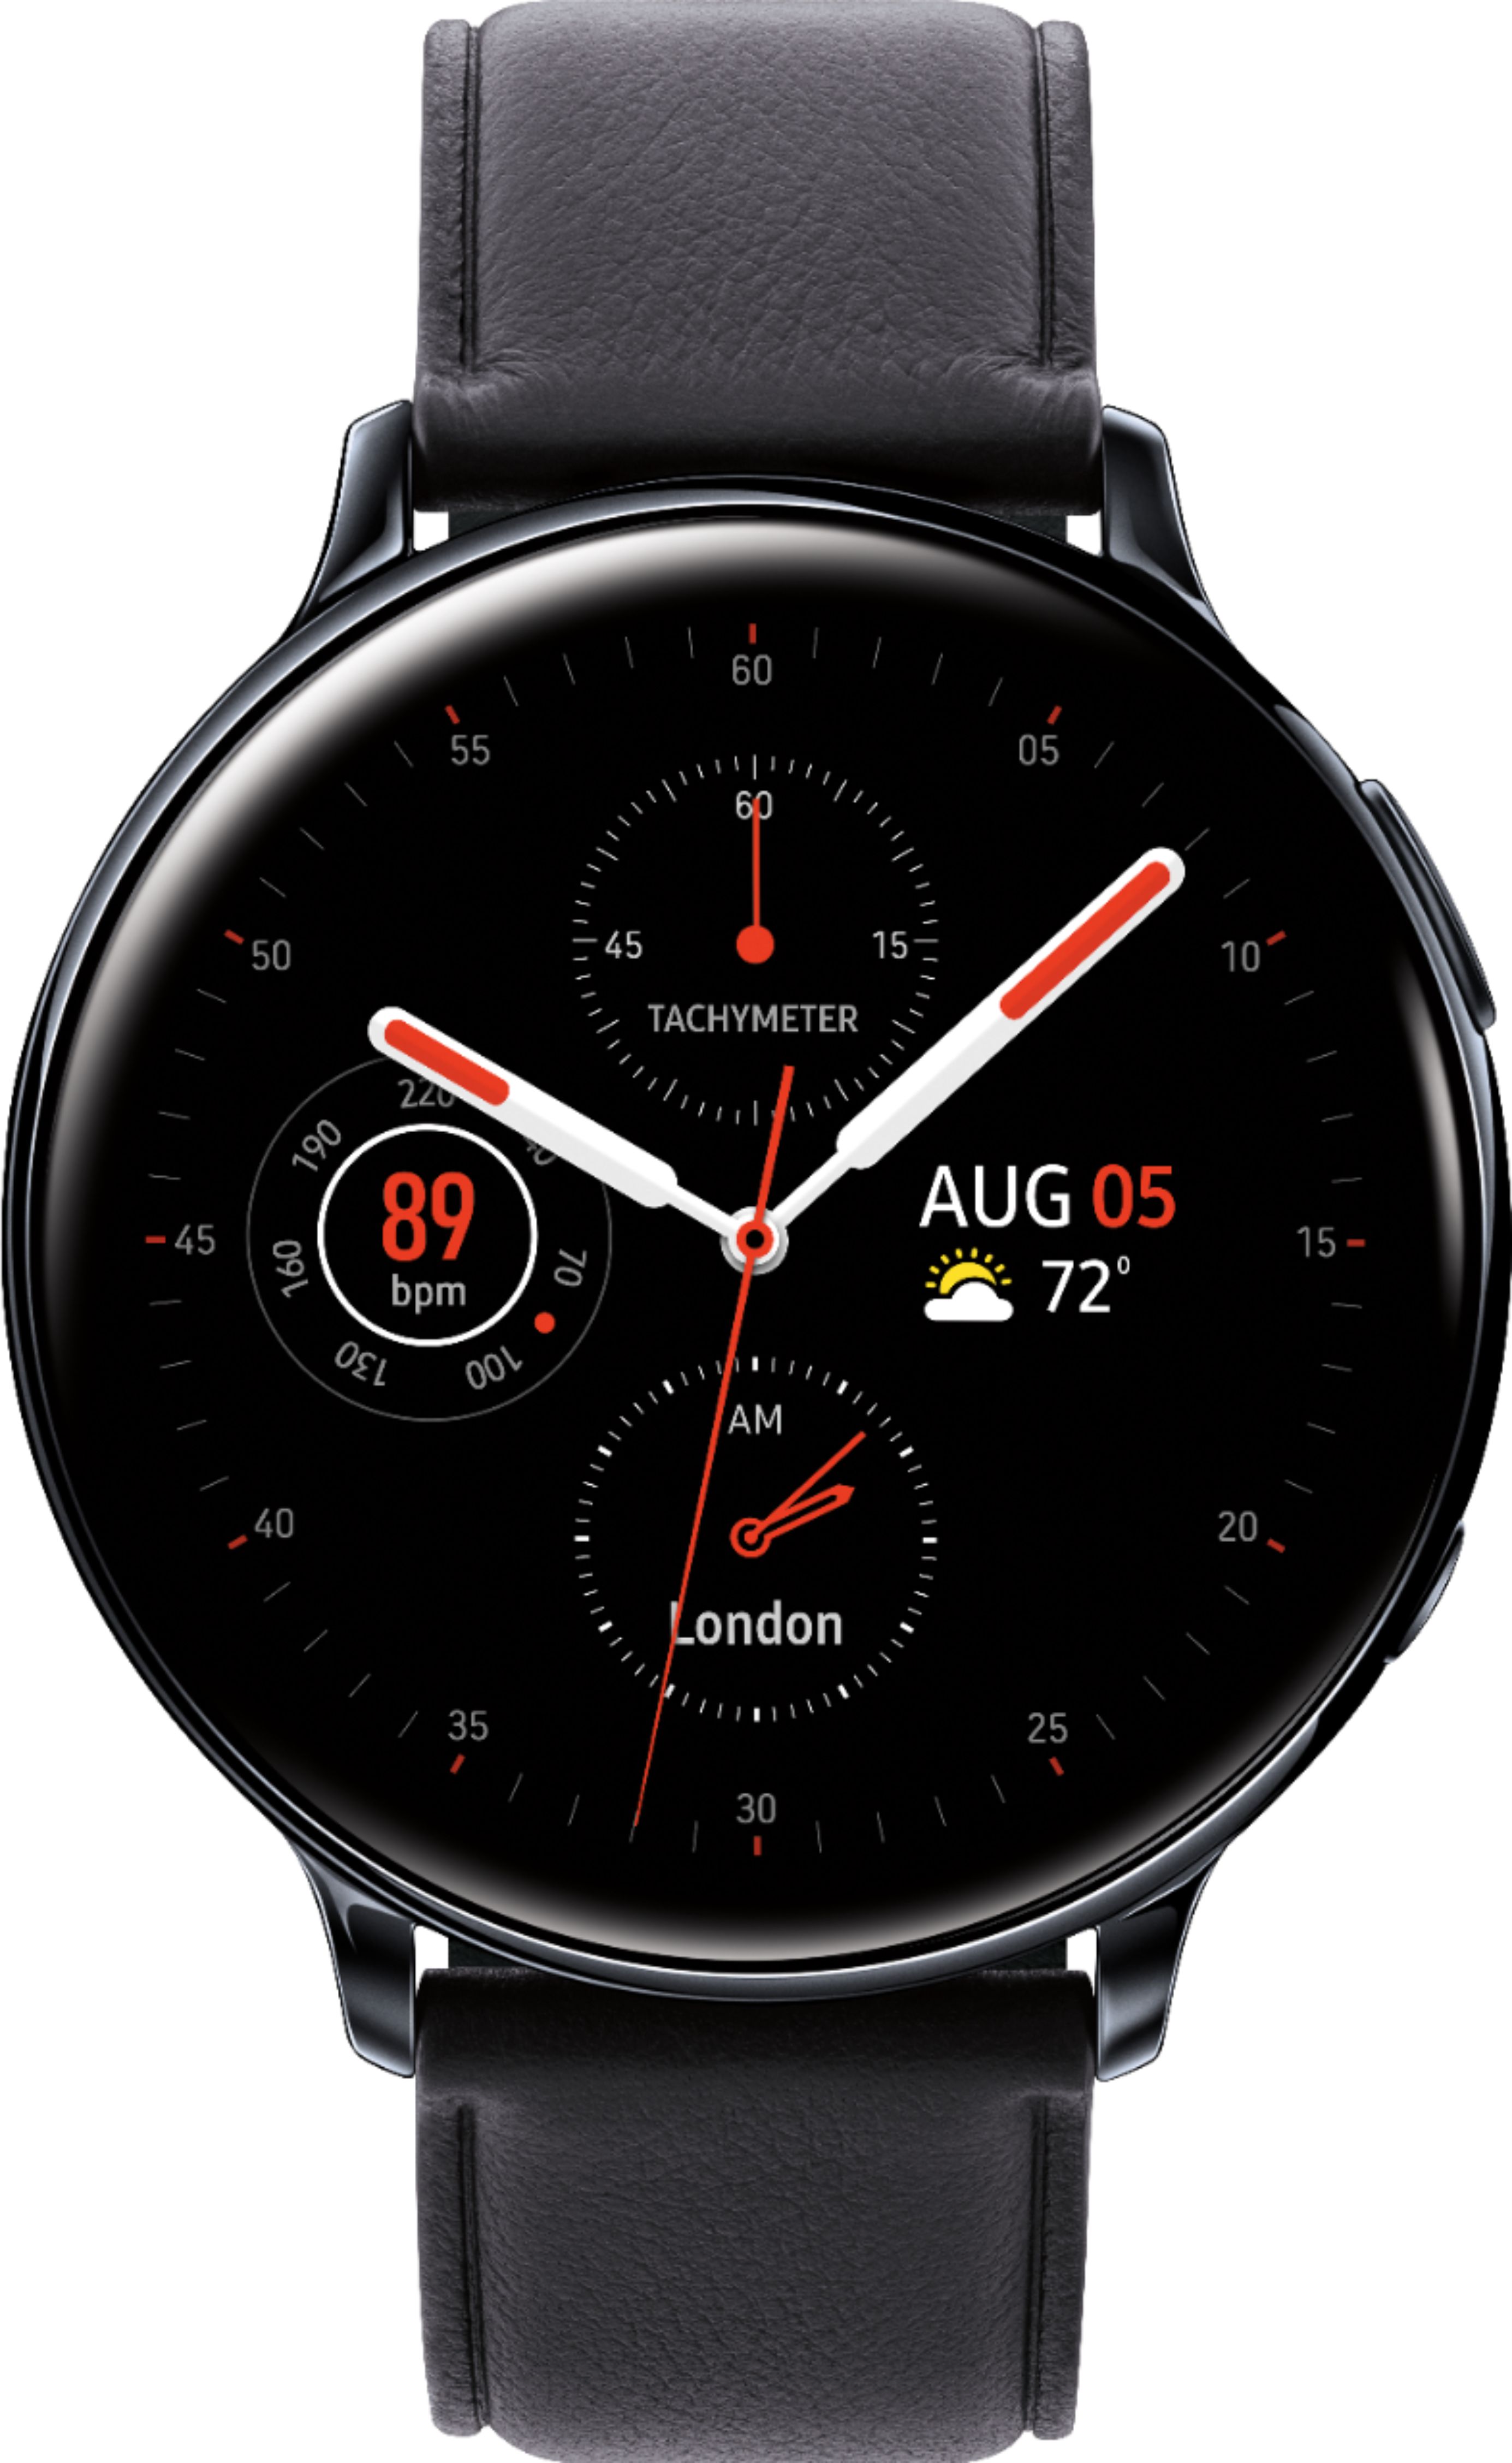 Samsung - Galaxy Watch Active2 Smartwatch 44mm Stainless Steel LTE (Unlocked) - Black